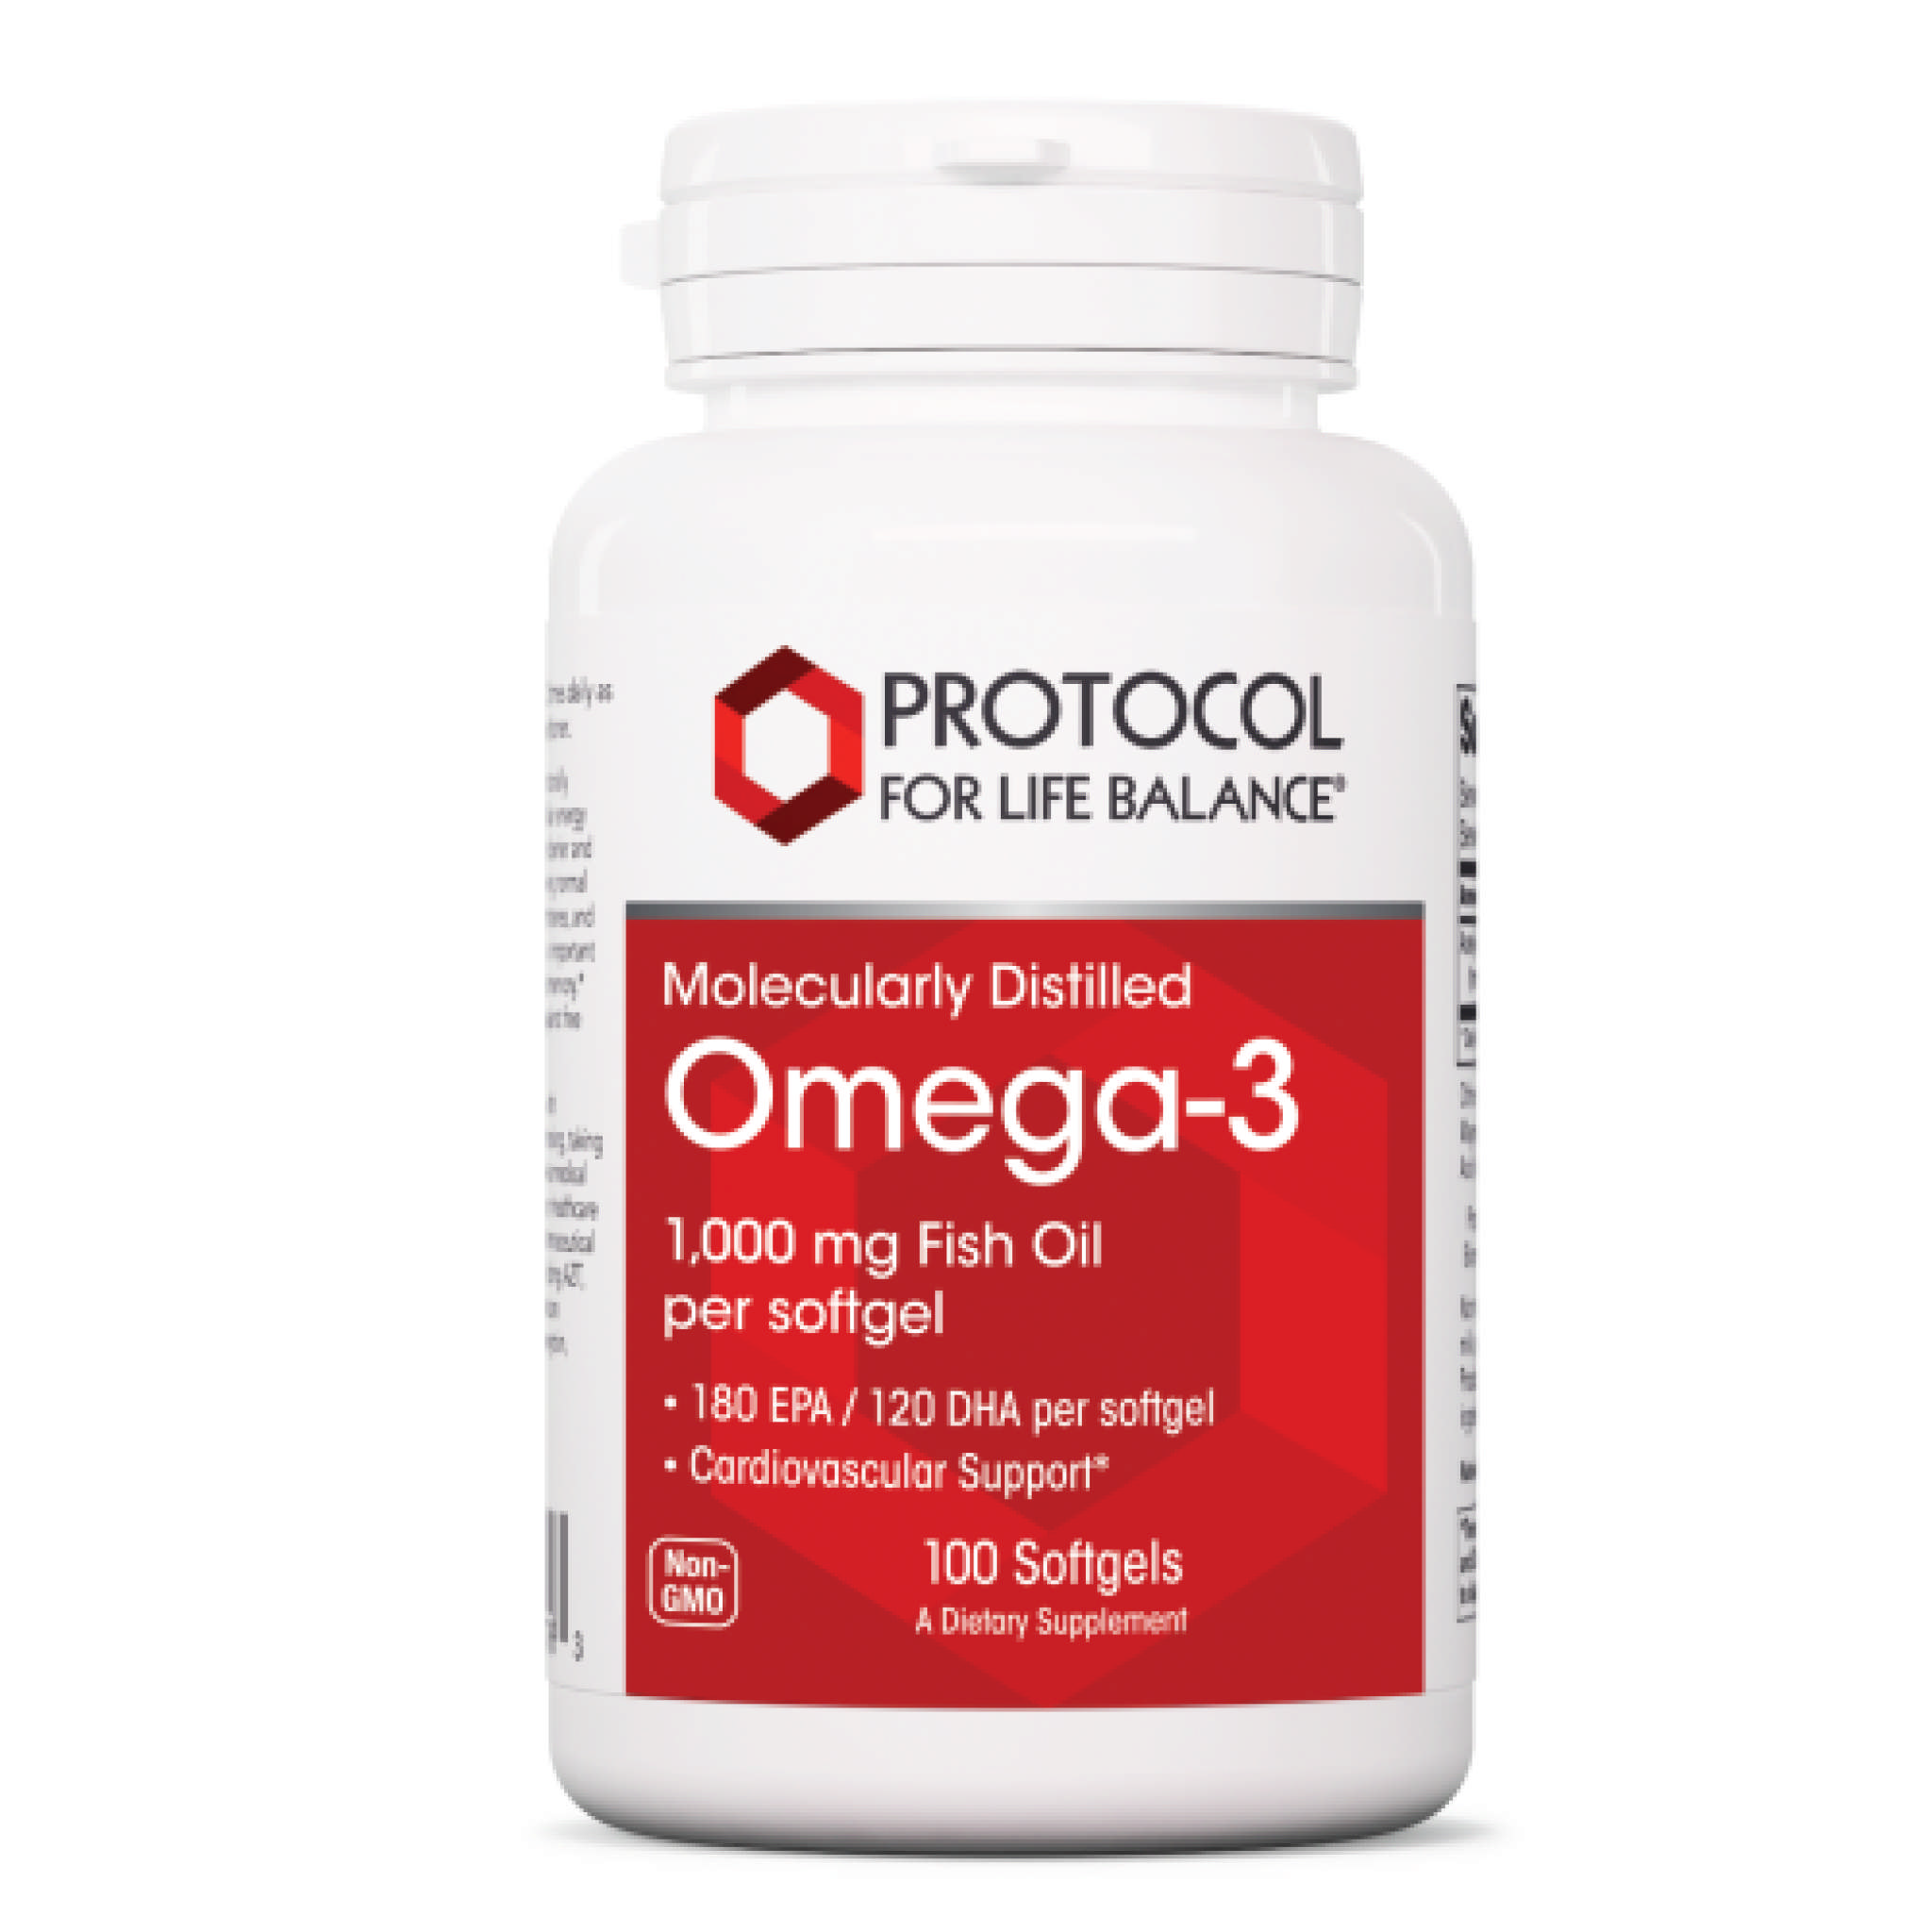 Protocol For Life Balance - Omega 3 1000 mg softgel